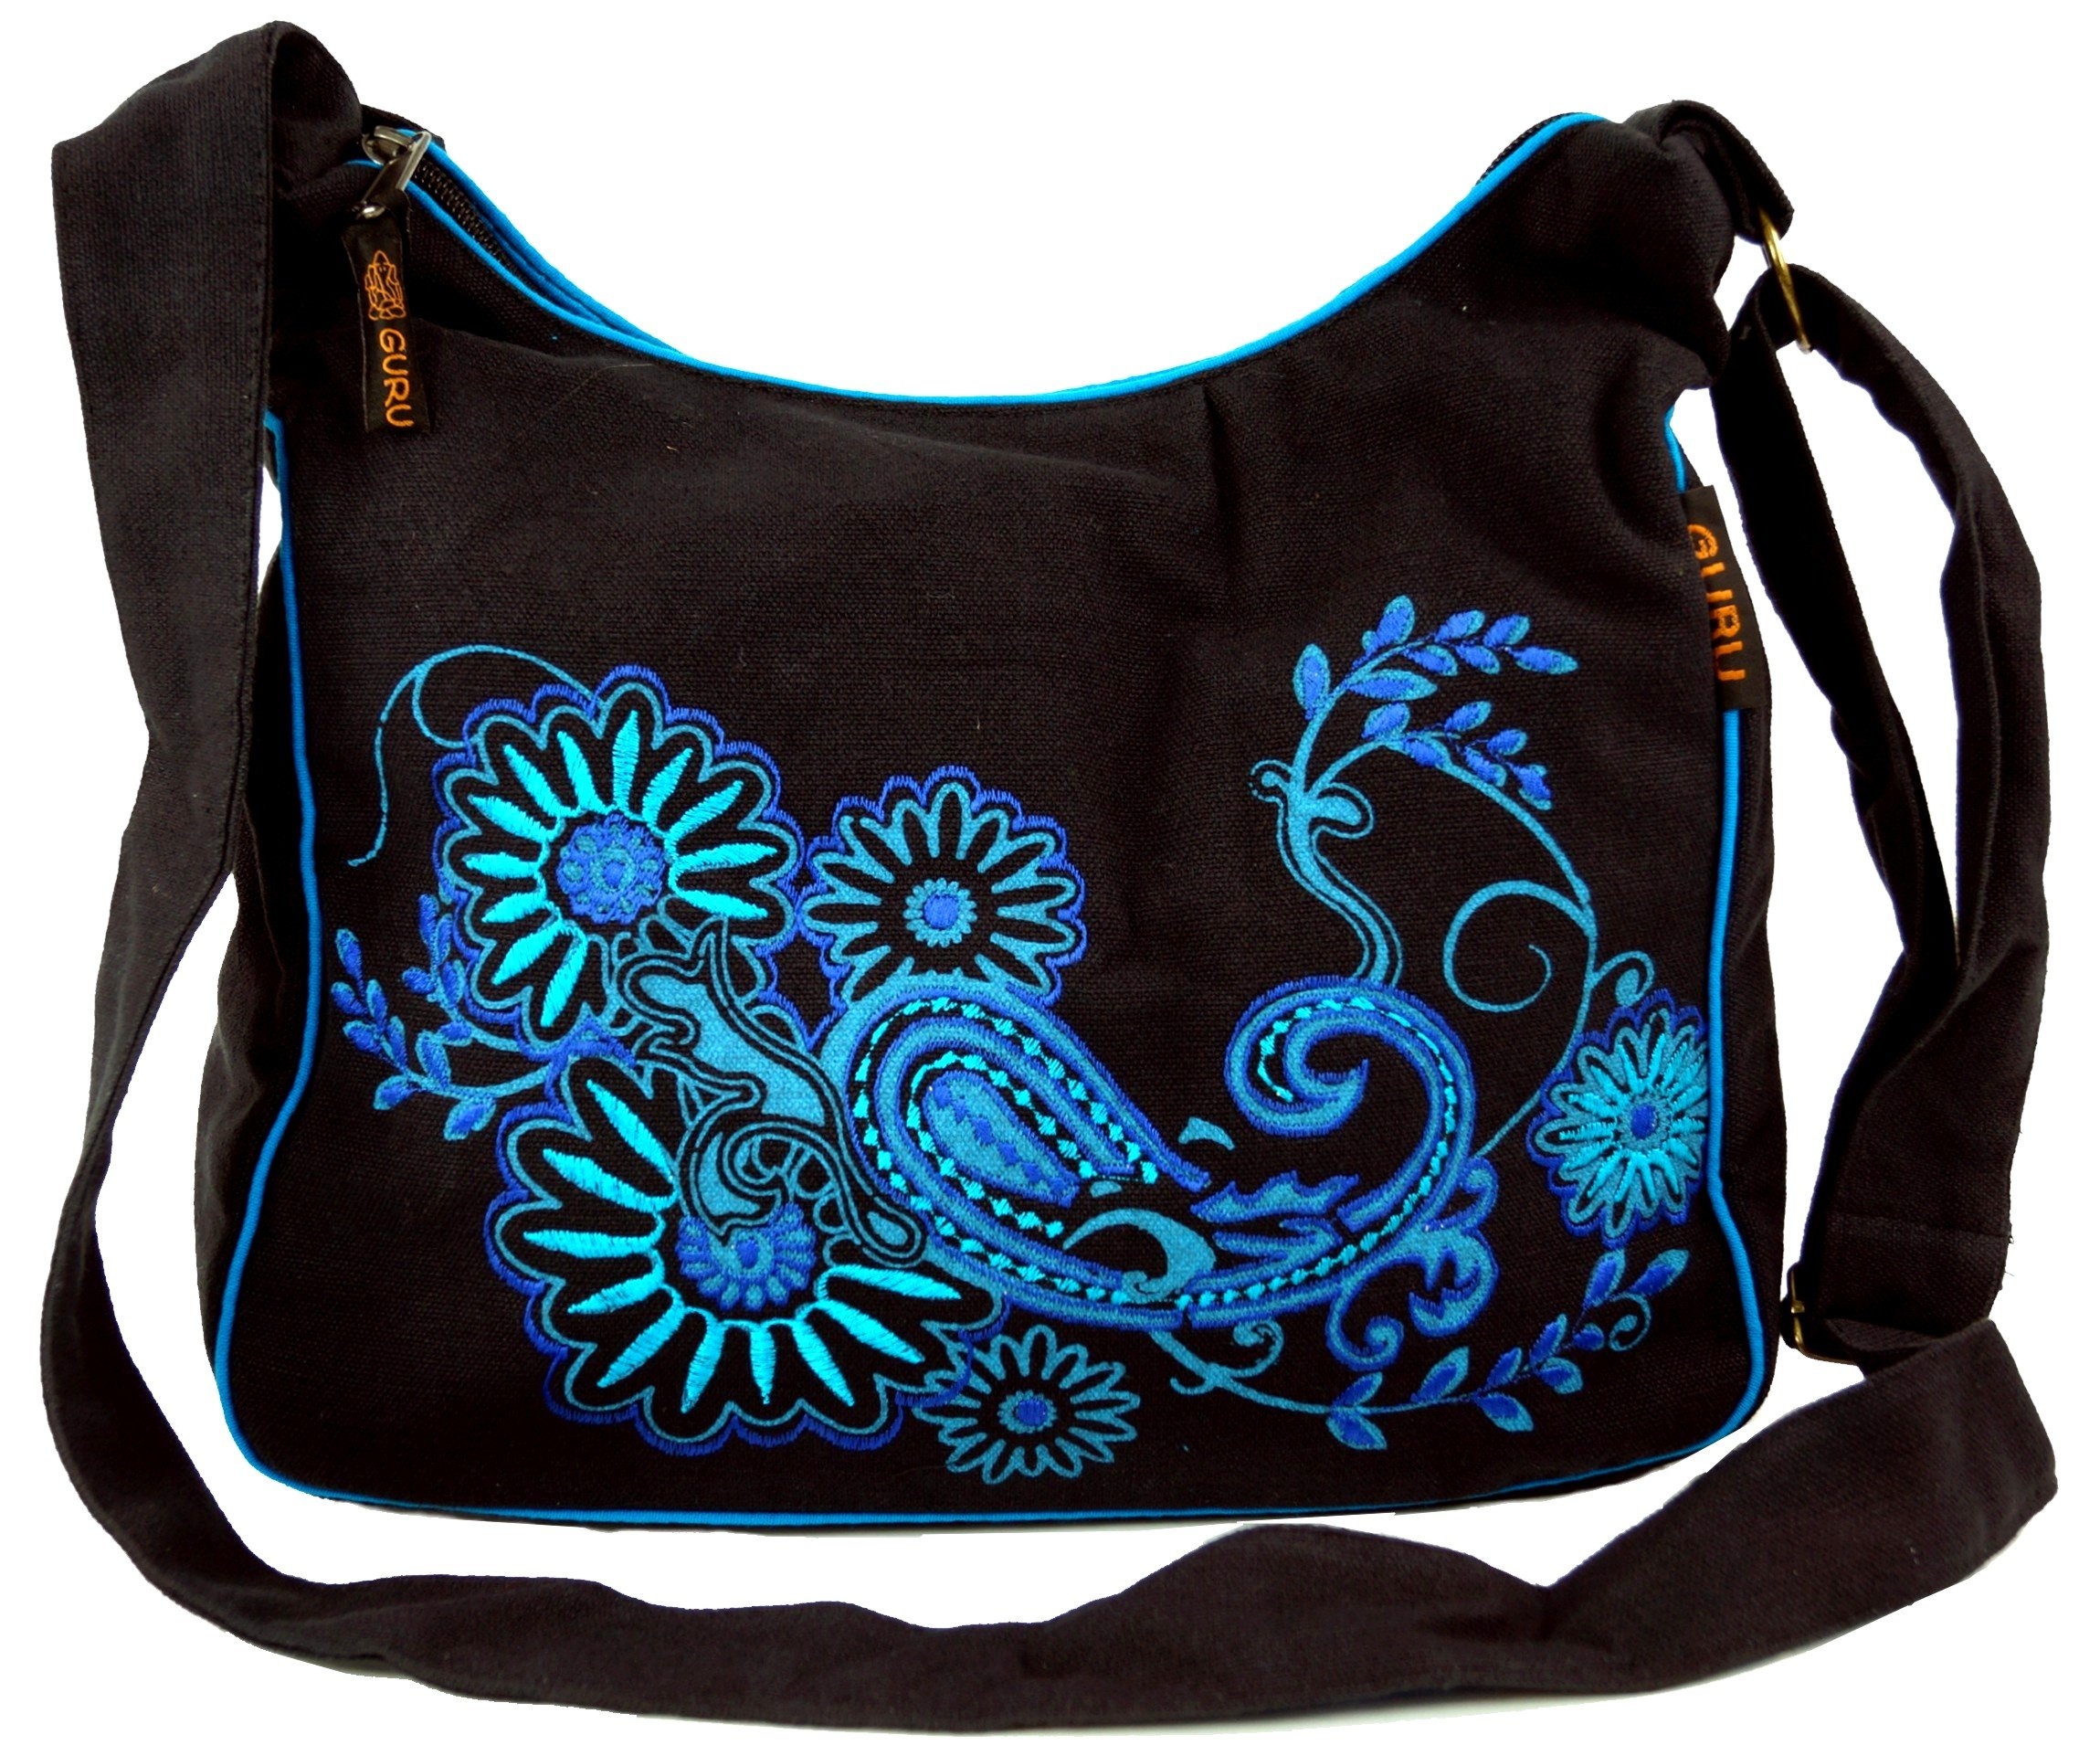 GURU SHOP Schultertasche, Hippie Tasche, Goa Tasche - Schwarz/blau, Herren/Damen, Baumwolle, Size:One Size, 23x28x12 cm, Alternative Umhängetasche, Handtasche aus Stoff - Einheitsgröße